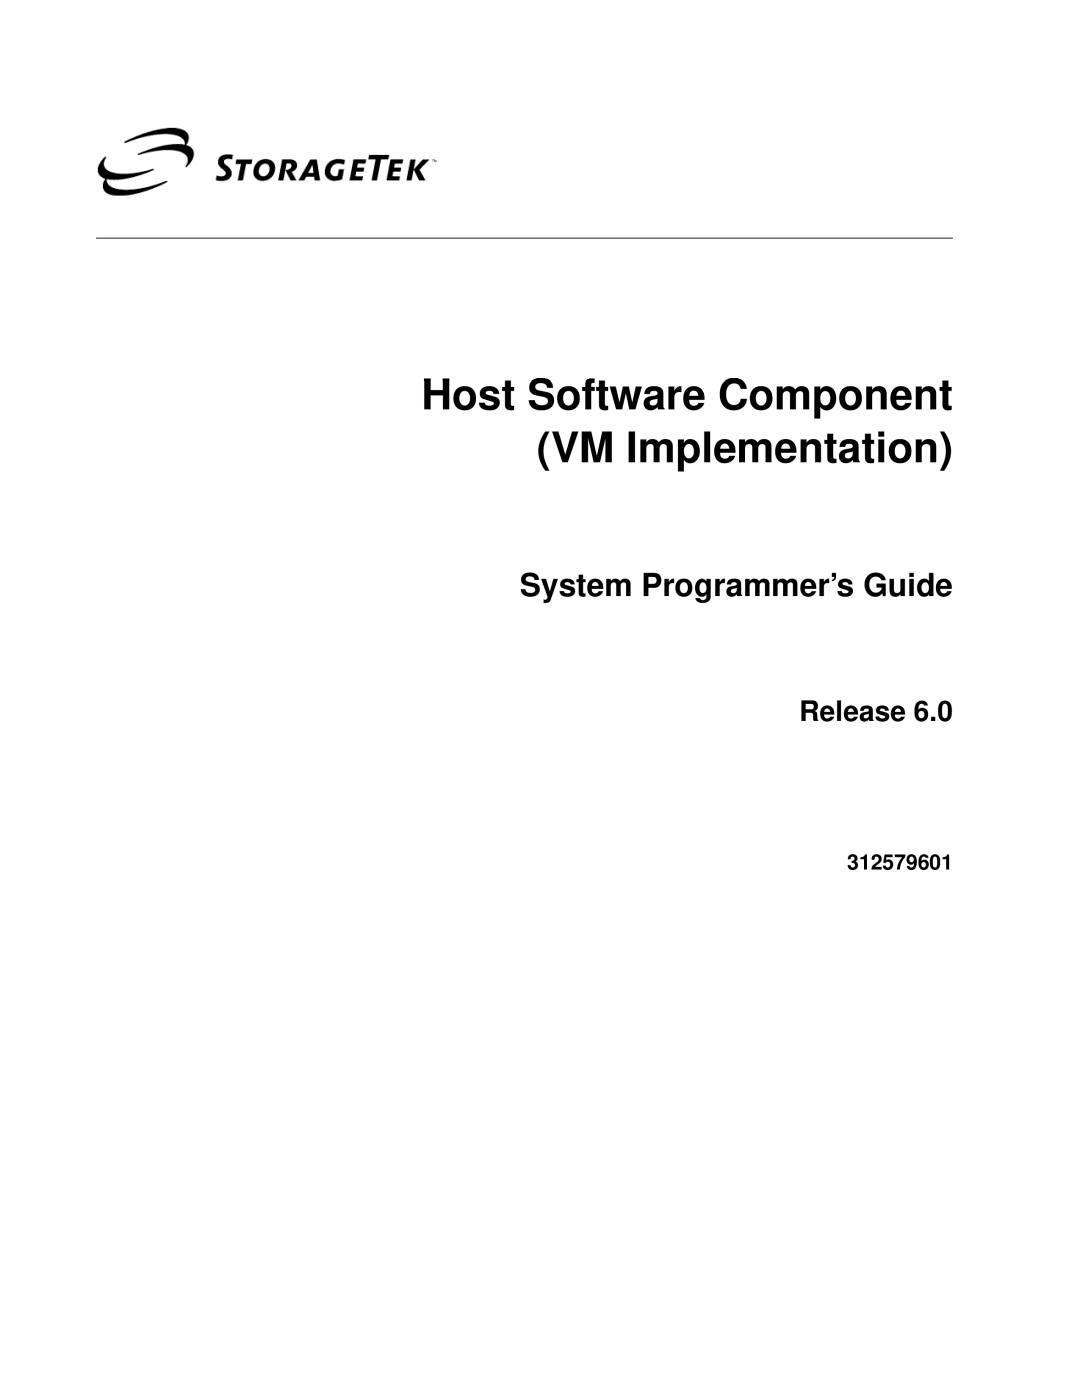 StorageTek manual System Programmer’s Guide, Release, 312579601, Host Software Component VM Implementation 